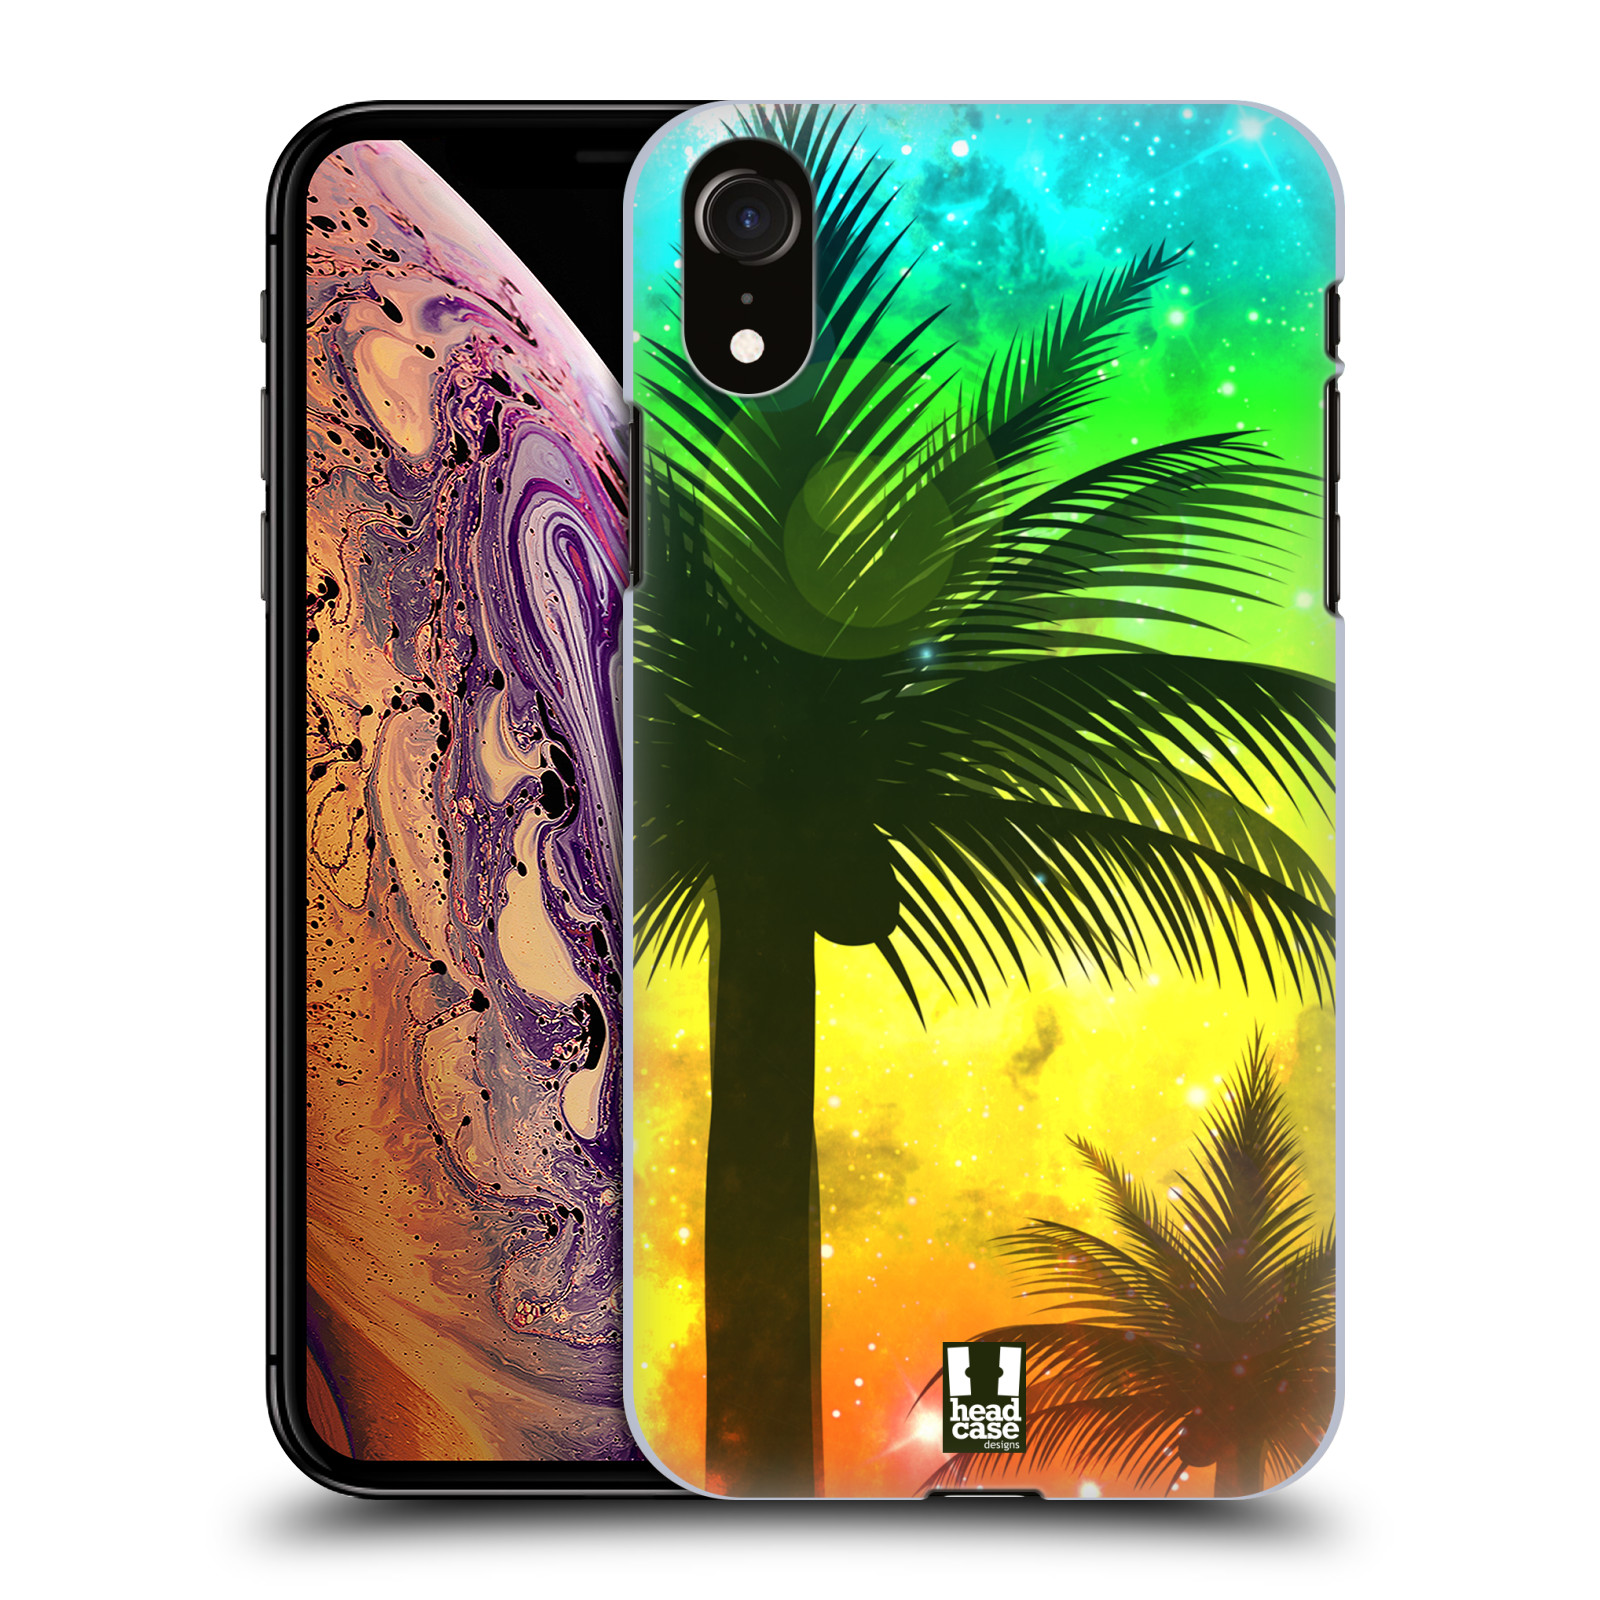 HEAD CASE plastový obal na mobil Apple Iphone XR vzor Kreslený motiv silueta moře a palmy ZELENÁ A ORANŽOVÁ